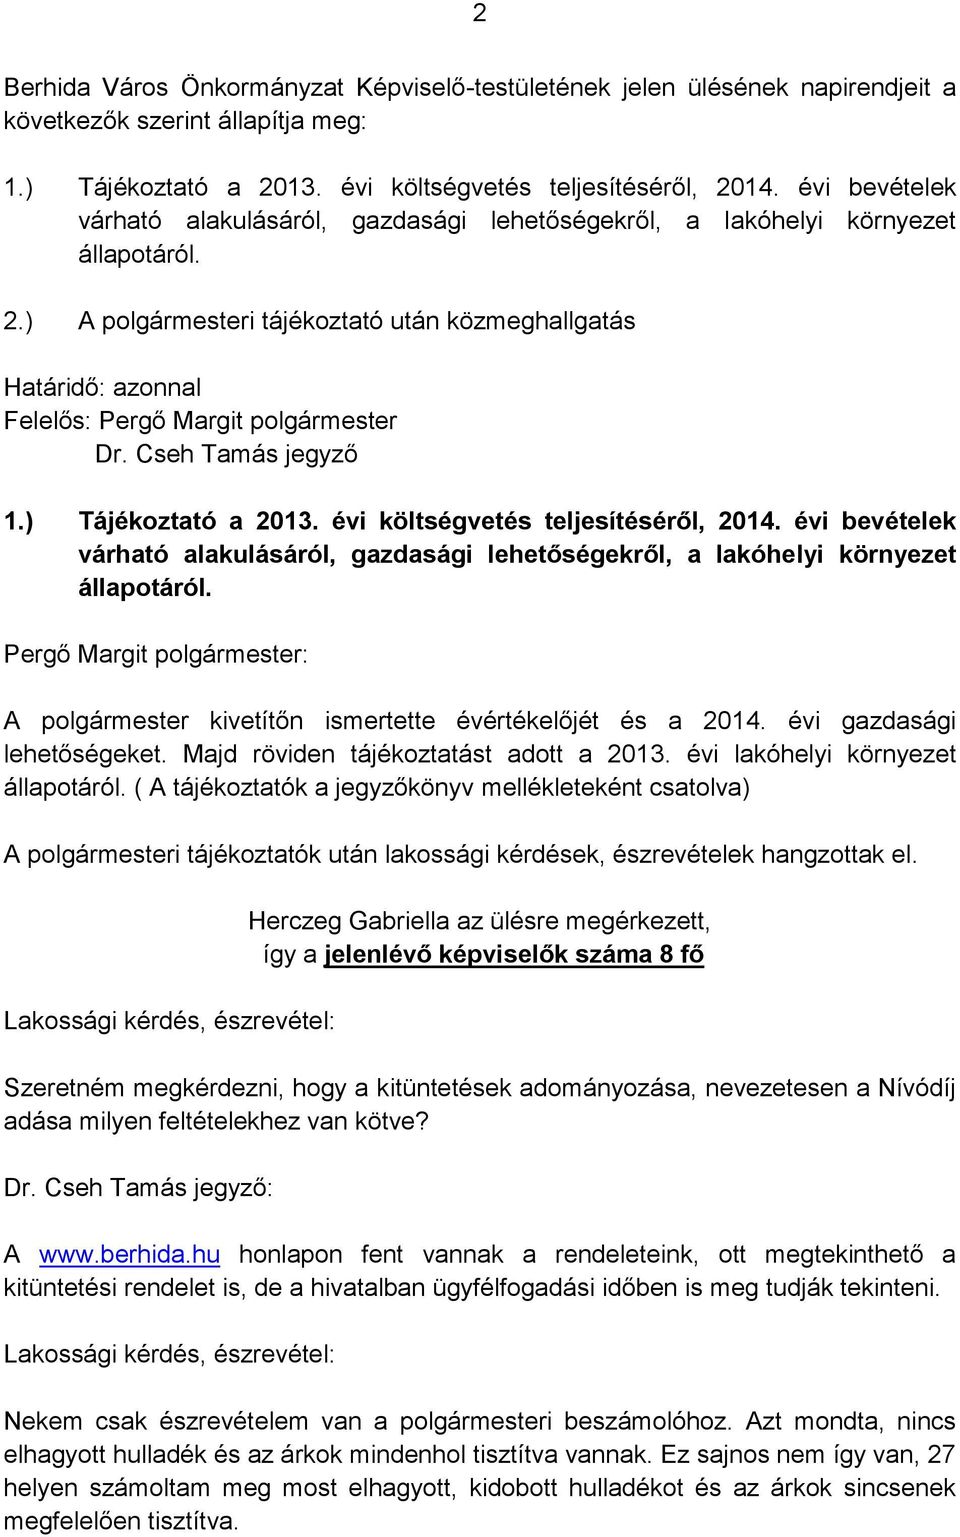 ) A polgármesteri tájékoztató után közmeghallgatás Határidő: azonnal Felelős: Pergő Margit polgármester Dr. Cseh Tamás jegyző 1.) Tájékoztató a 2013. évi költségvetés teljesítéséről, 2014.